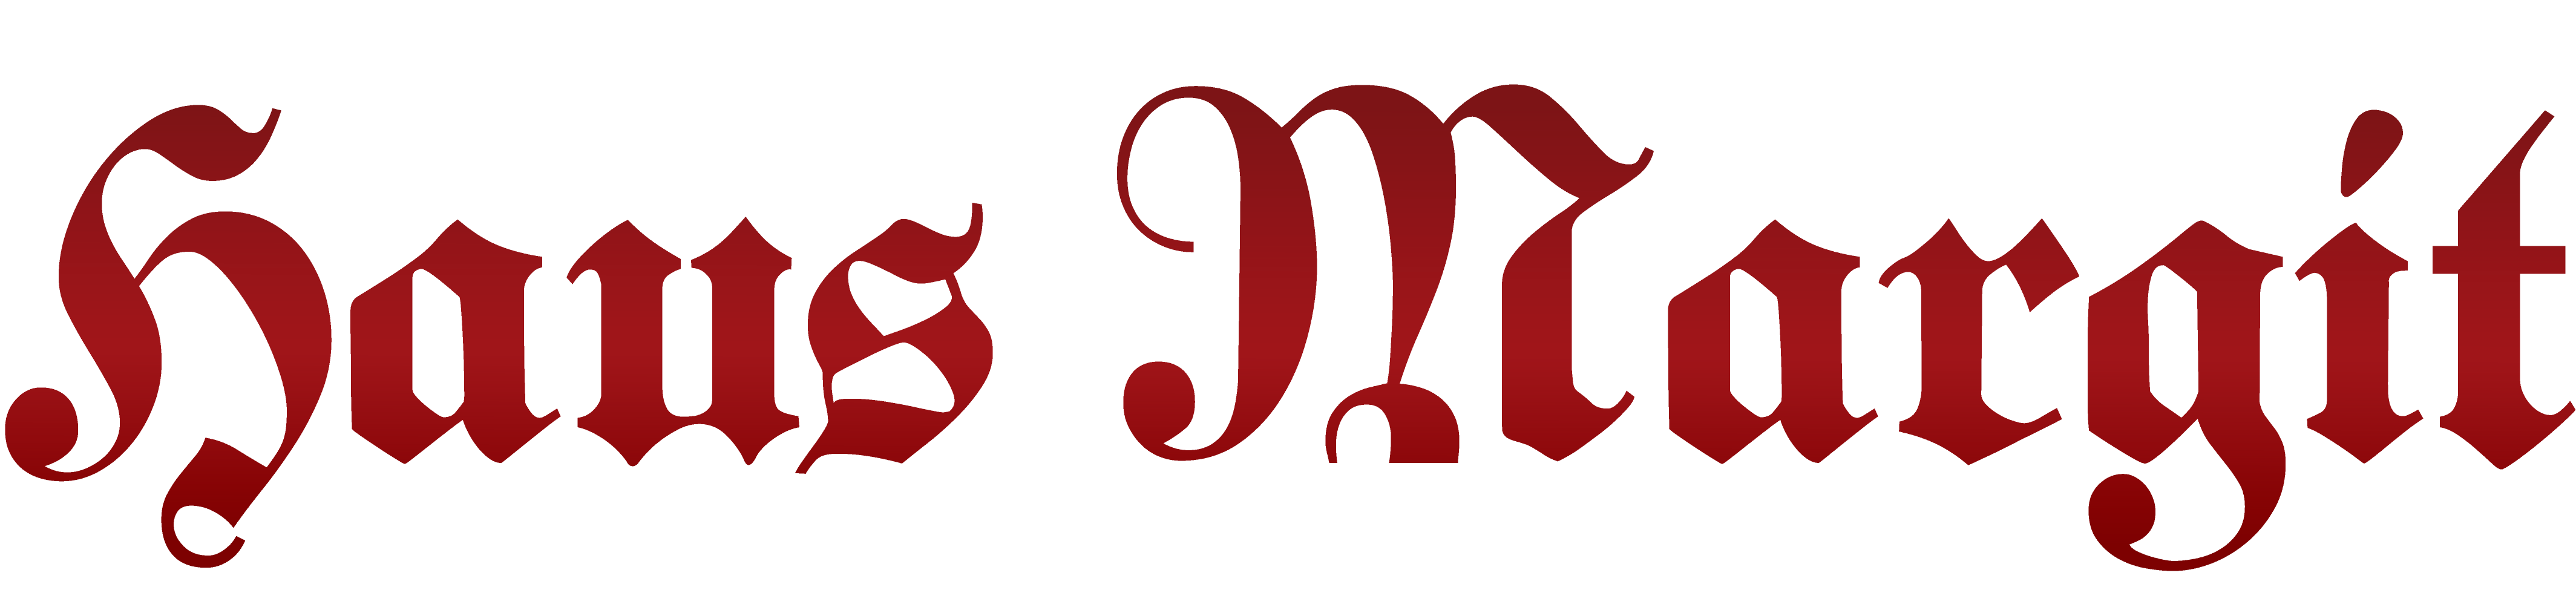 Logo "Haus Margit Mayrhofen" in gebrochener Frakturschrift